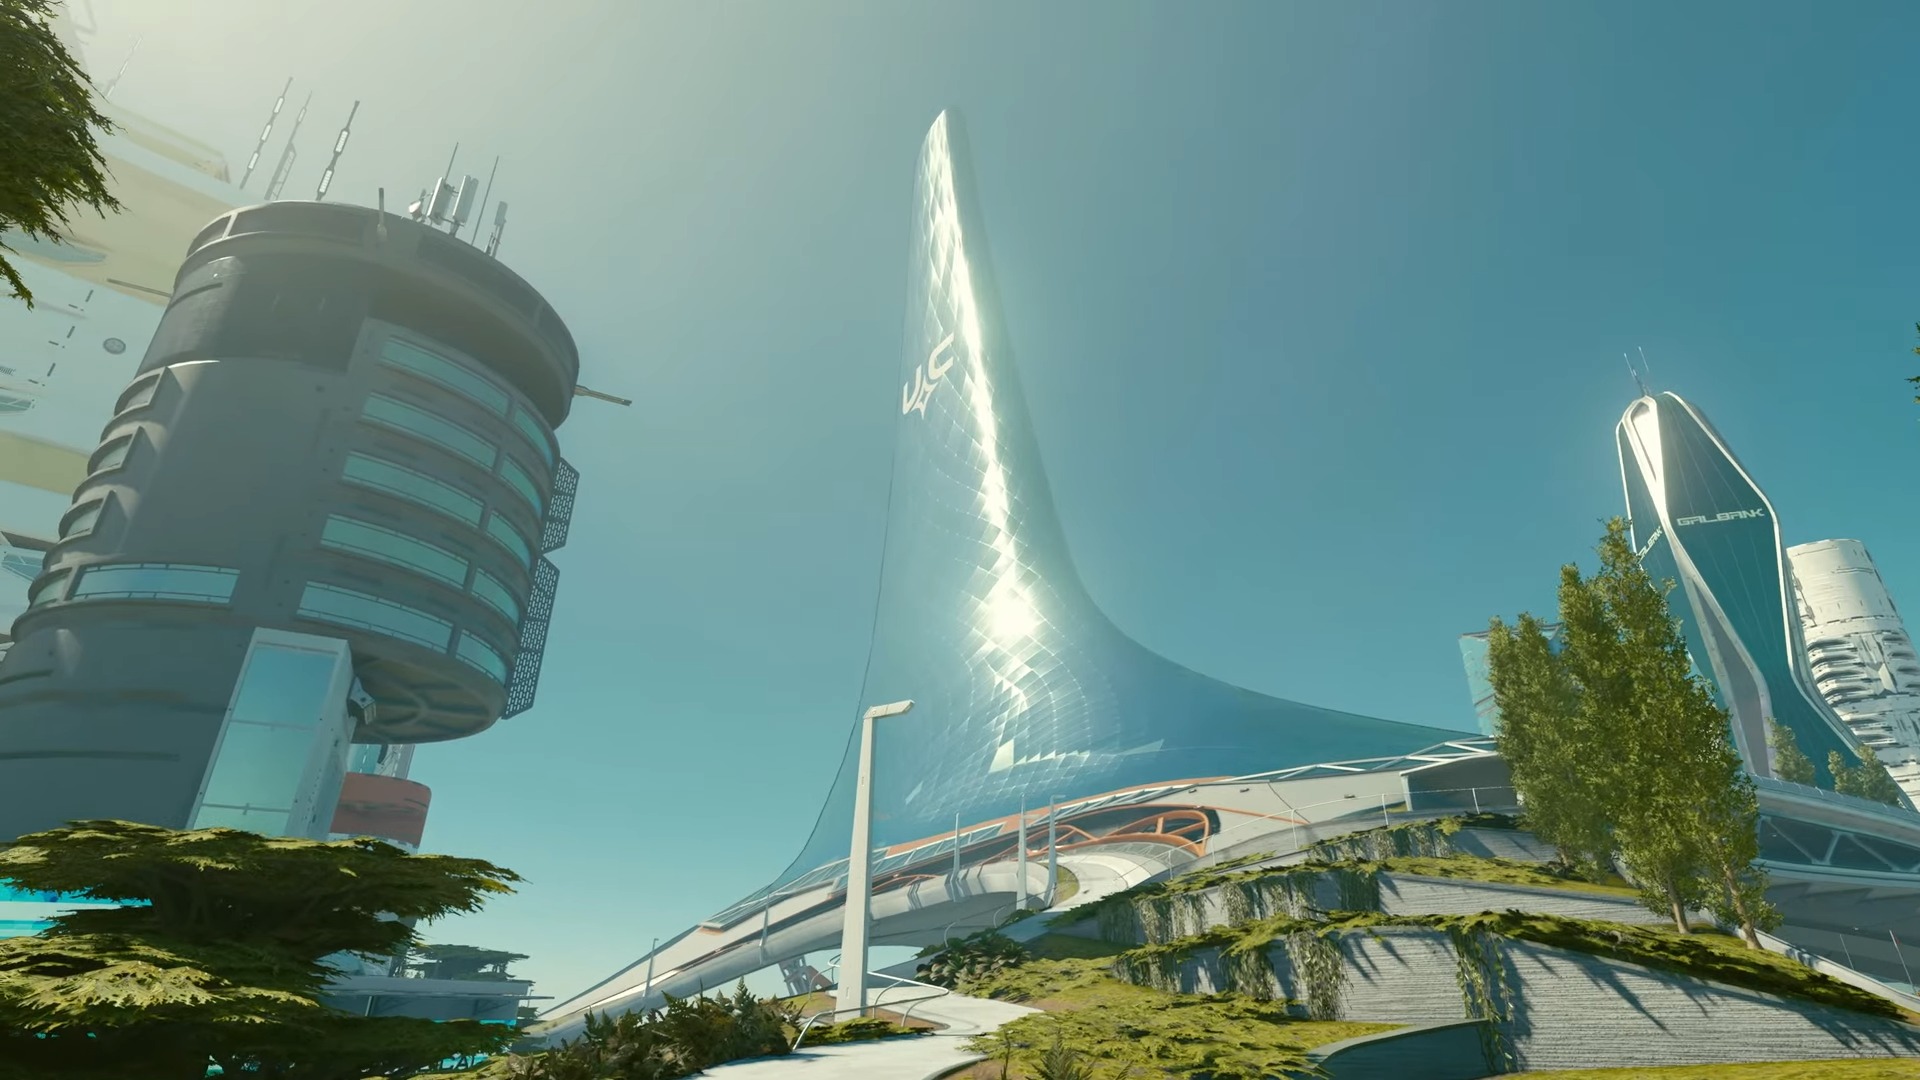 Starfield höghus i Nya Atlantis